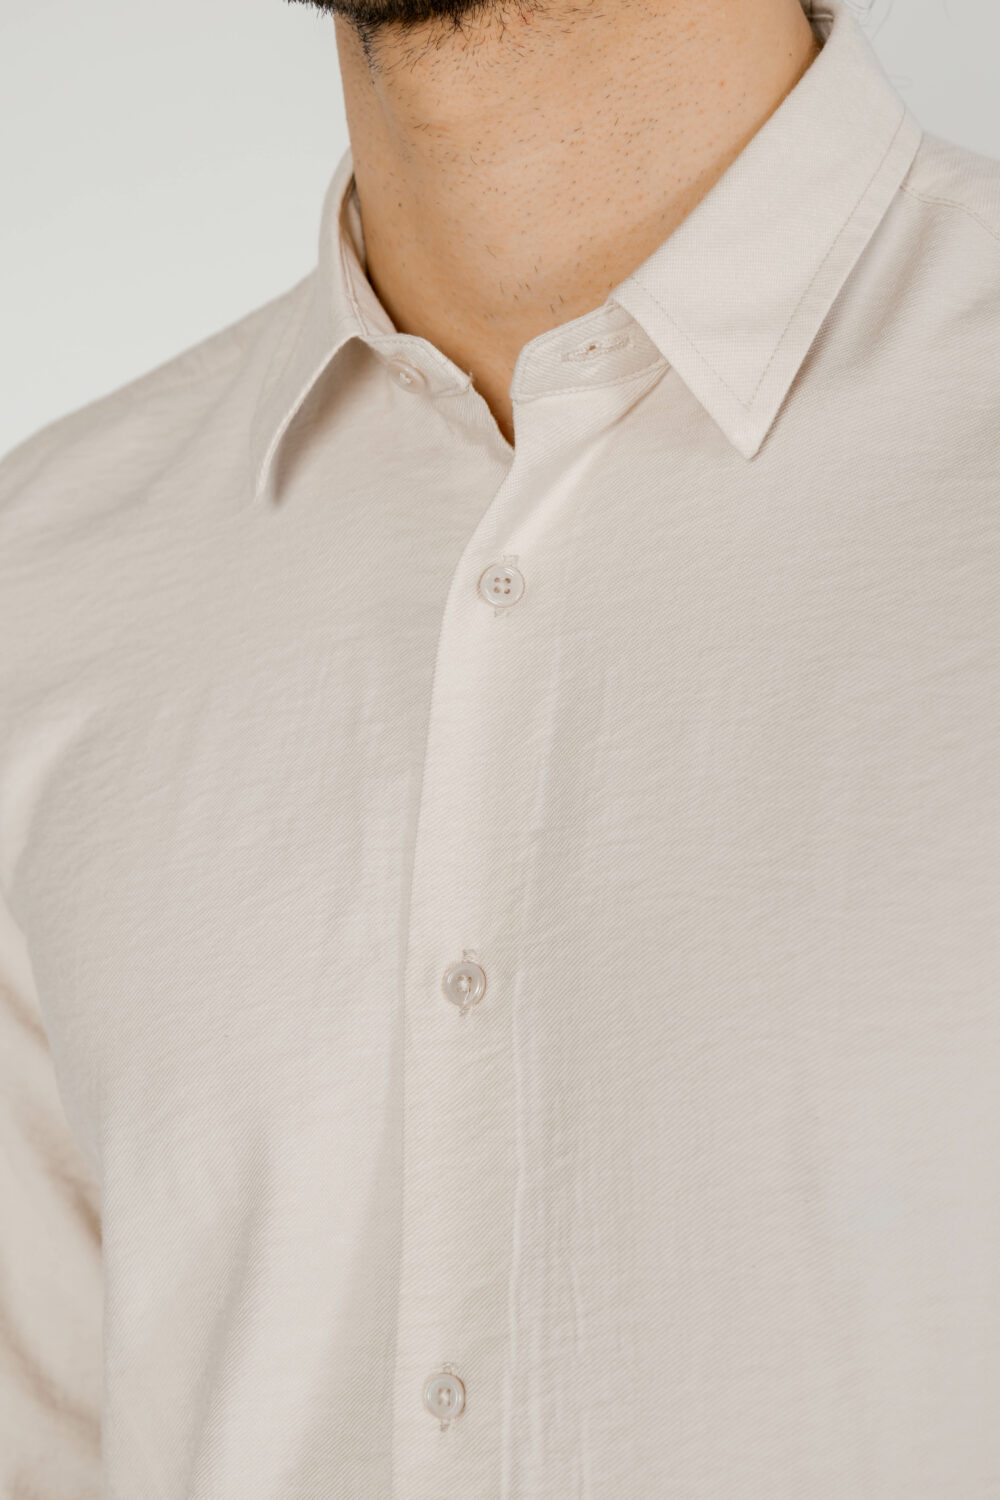 Camicia manica lunga Antony Morato NAPOLI Beige chiaro - Foto 2